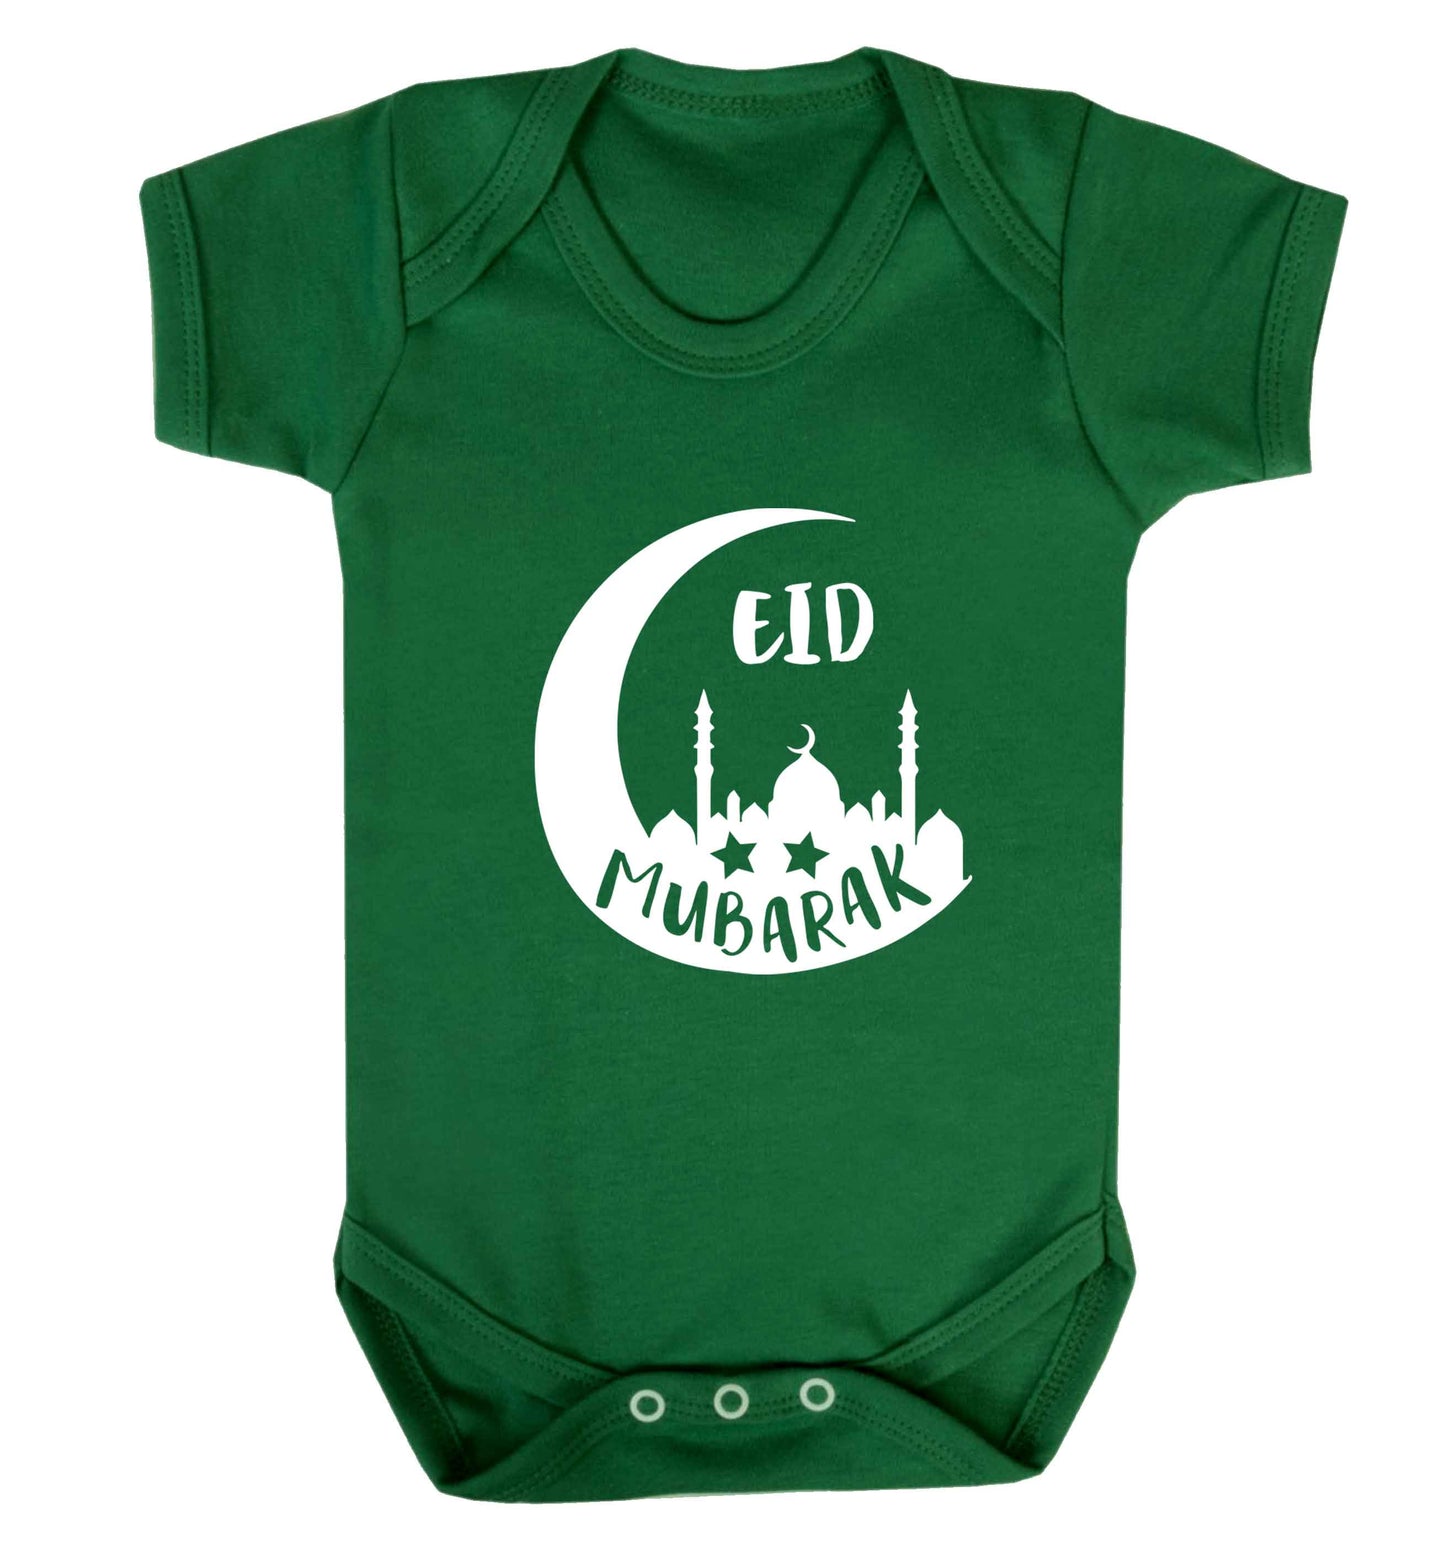 Eid mubarak baby vest green 18-24 months